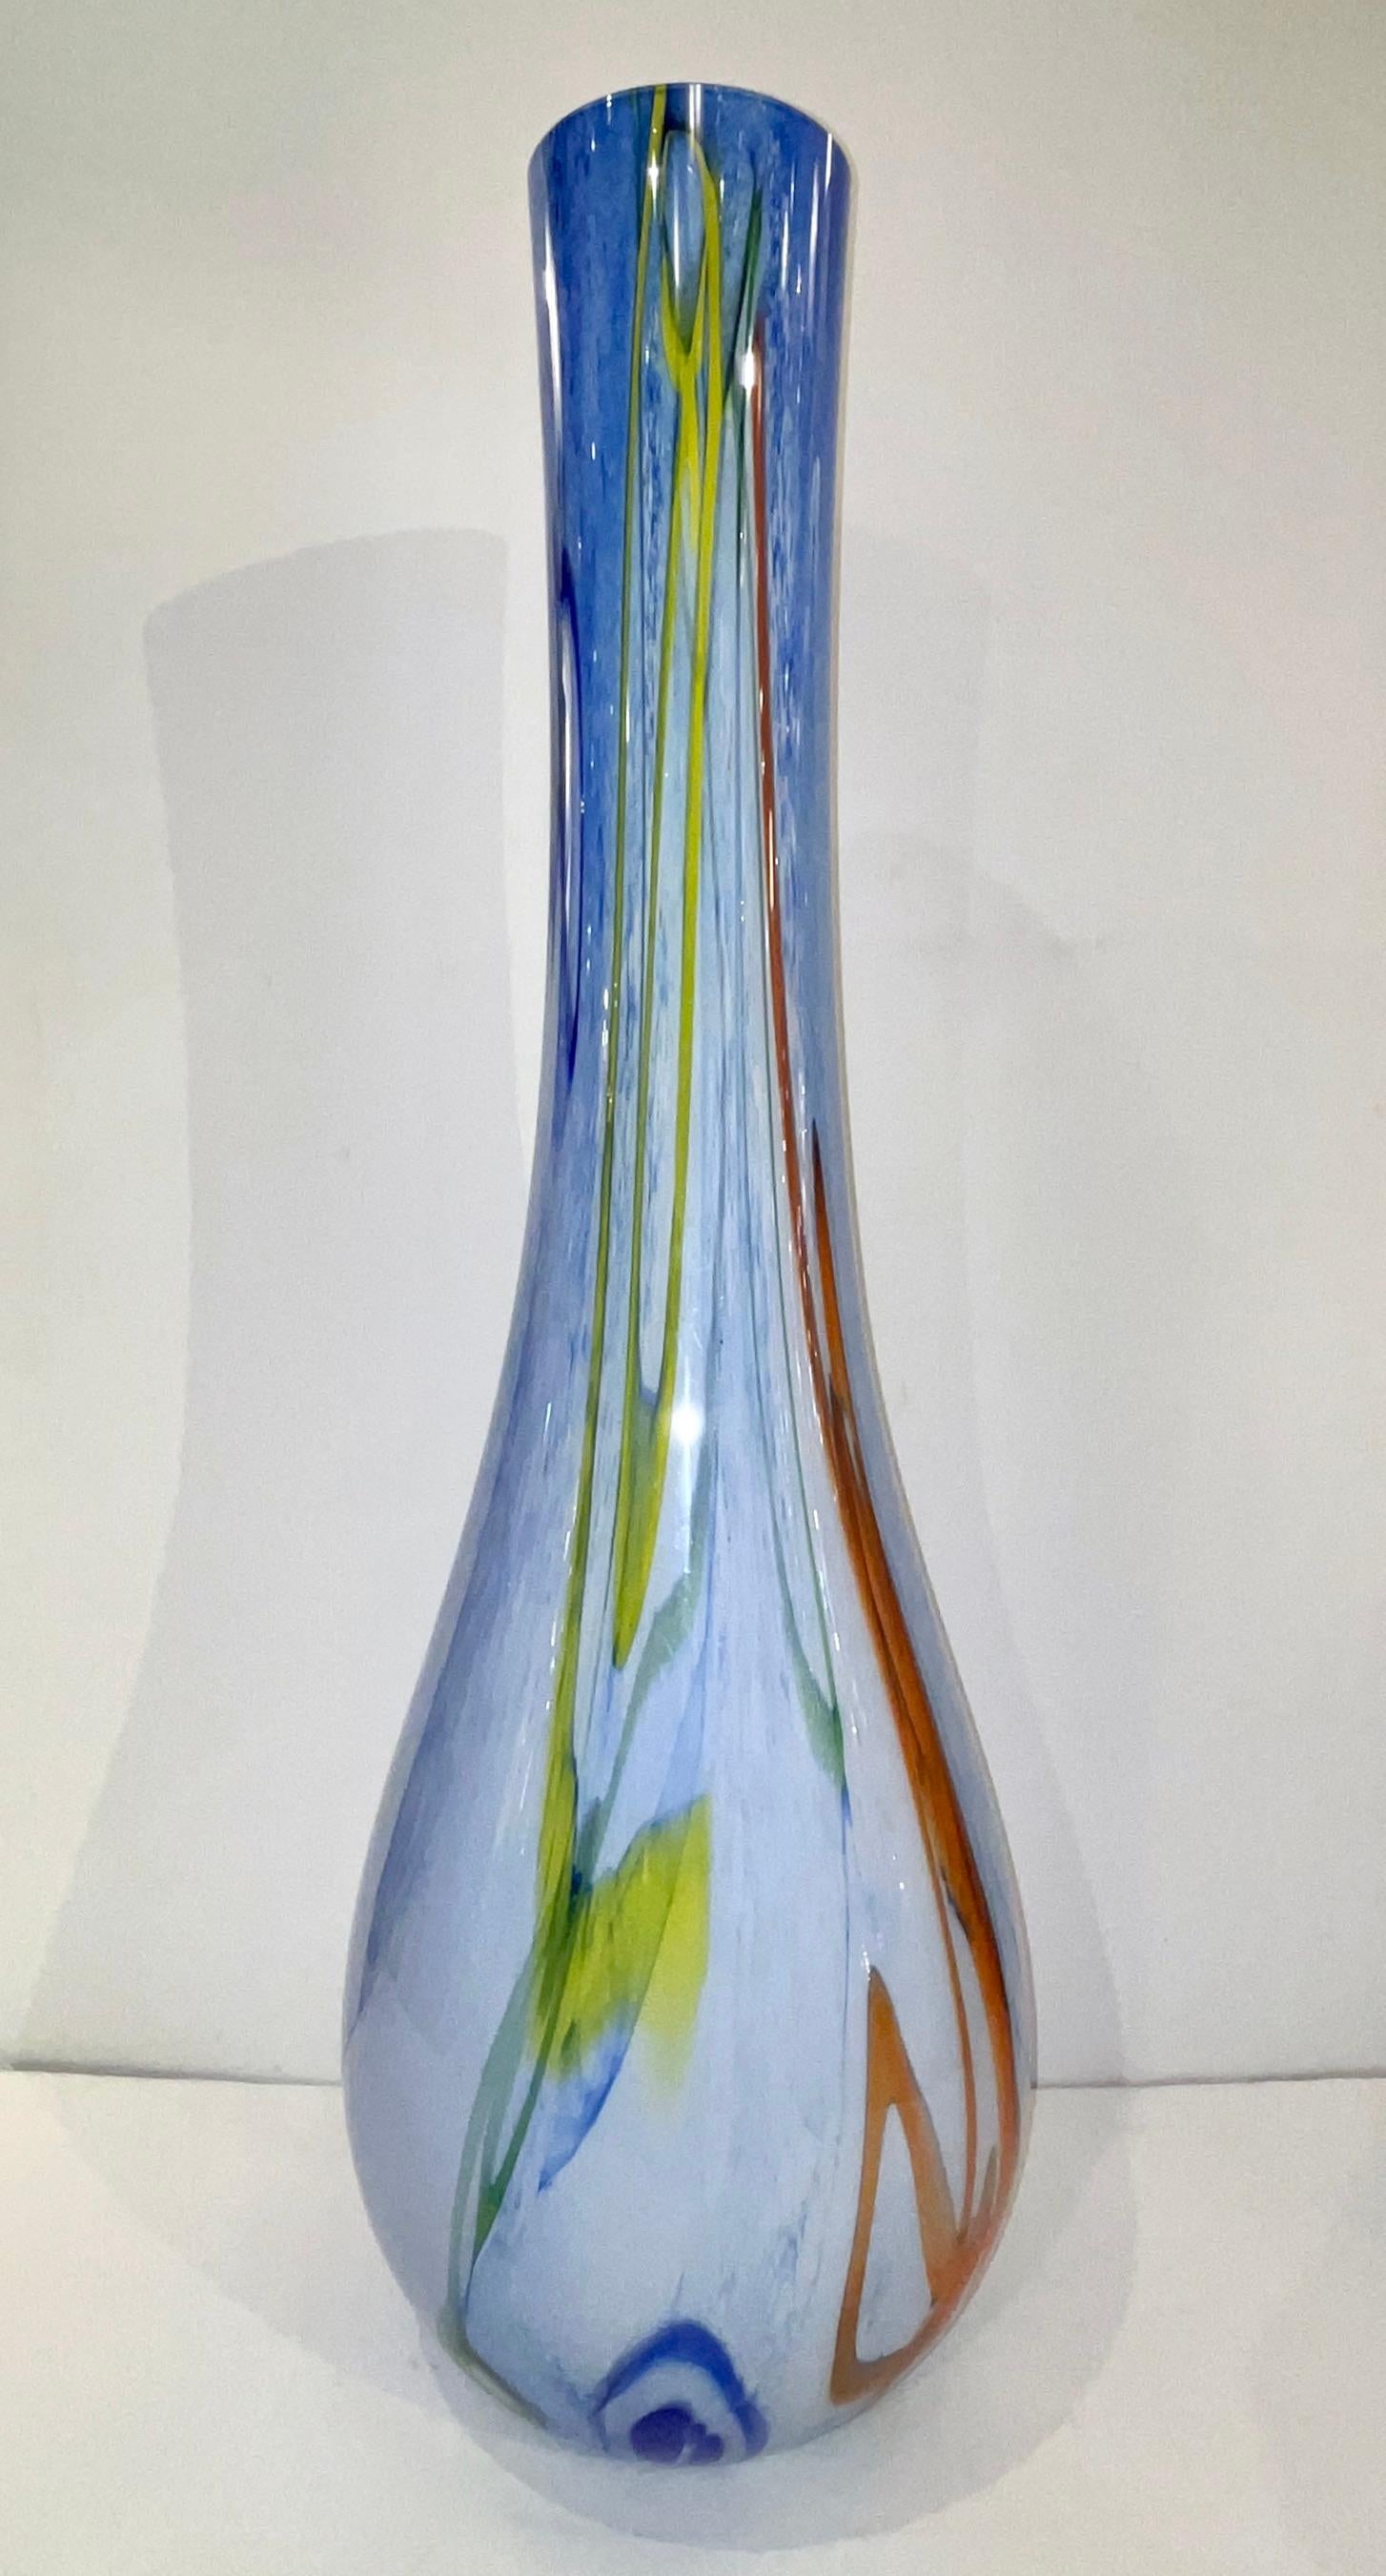 Un énorme vase en verre de Murano, impressionnant par sa taille, une œuvre d'art en verre de Murano soufflé et incrusté, travaillé comme une peinture moderne avec un décor organique sophistiqué et tourbillonnant de murrines allongées incrustées dans